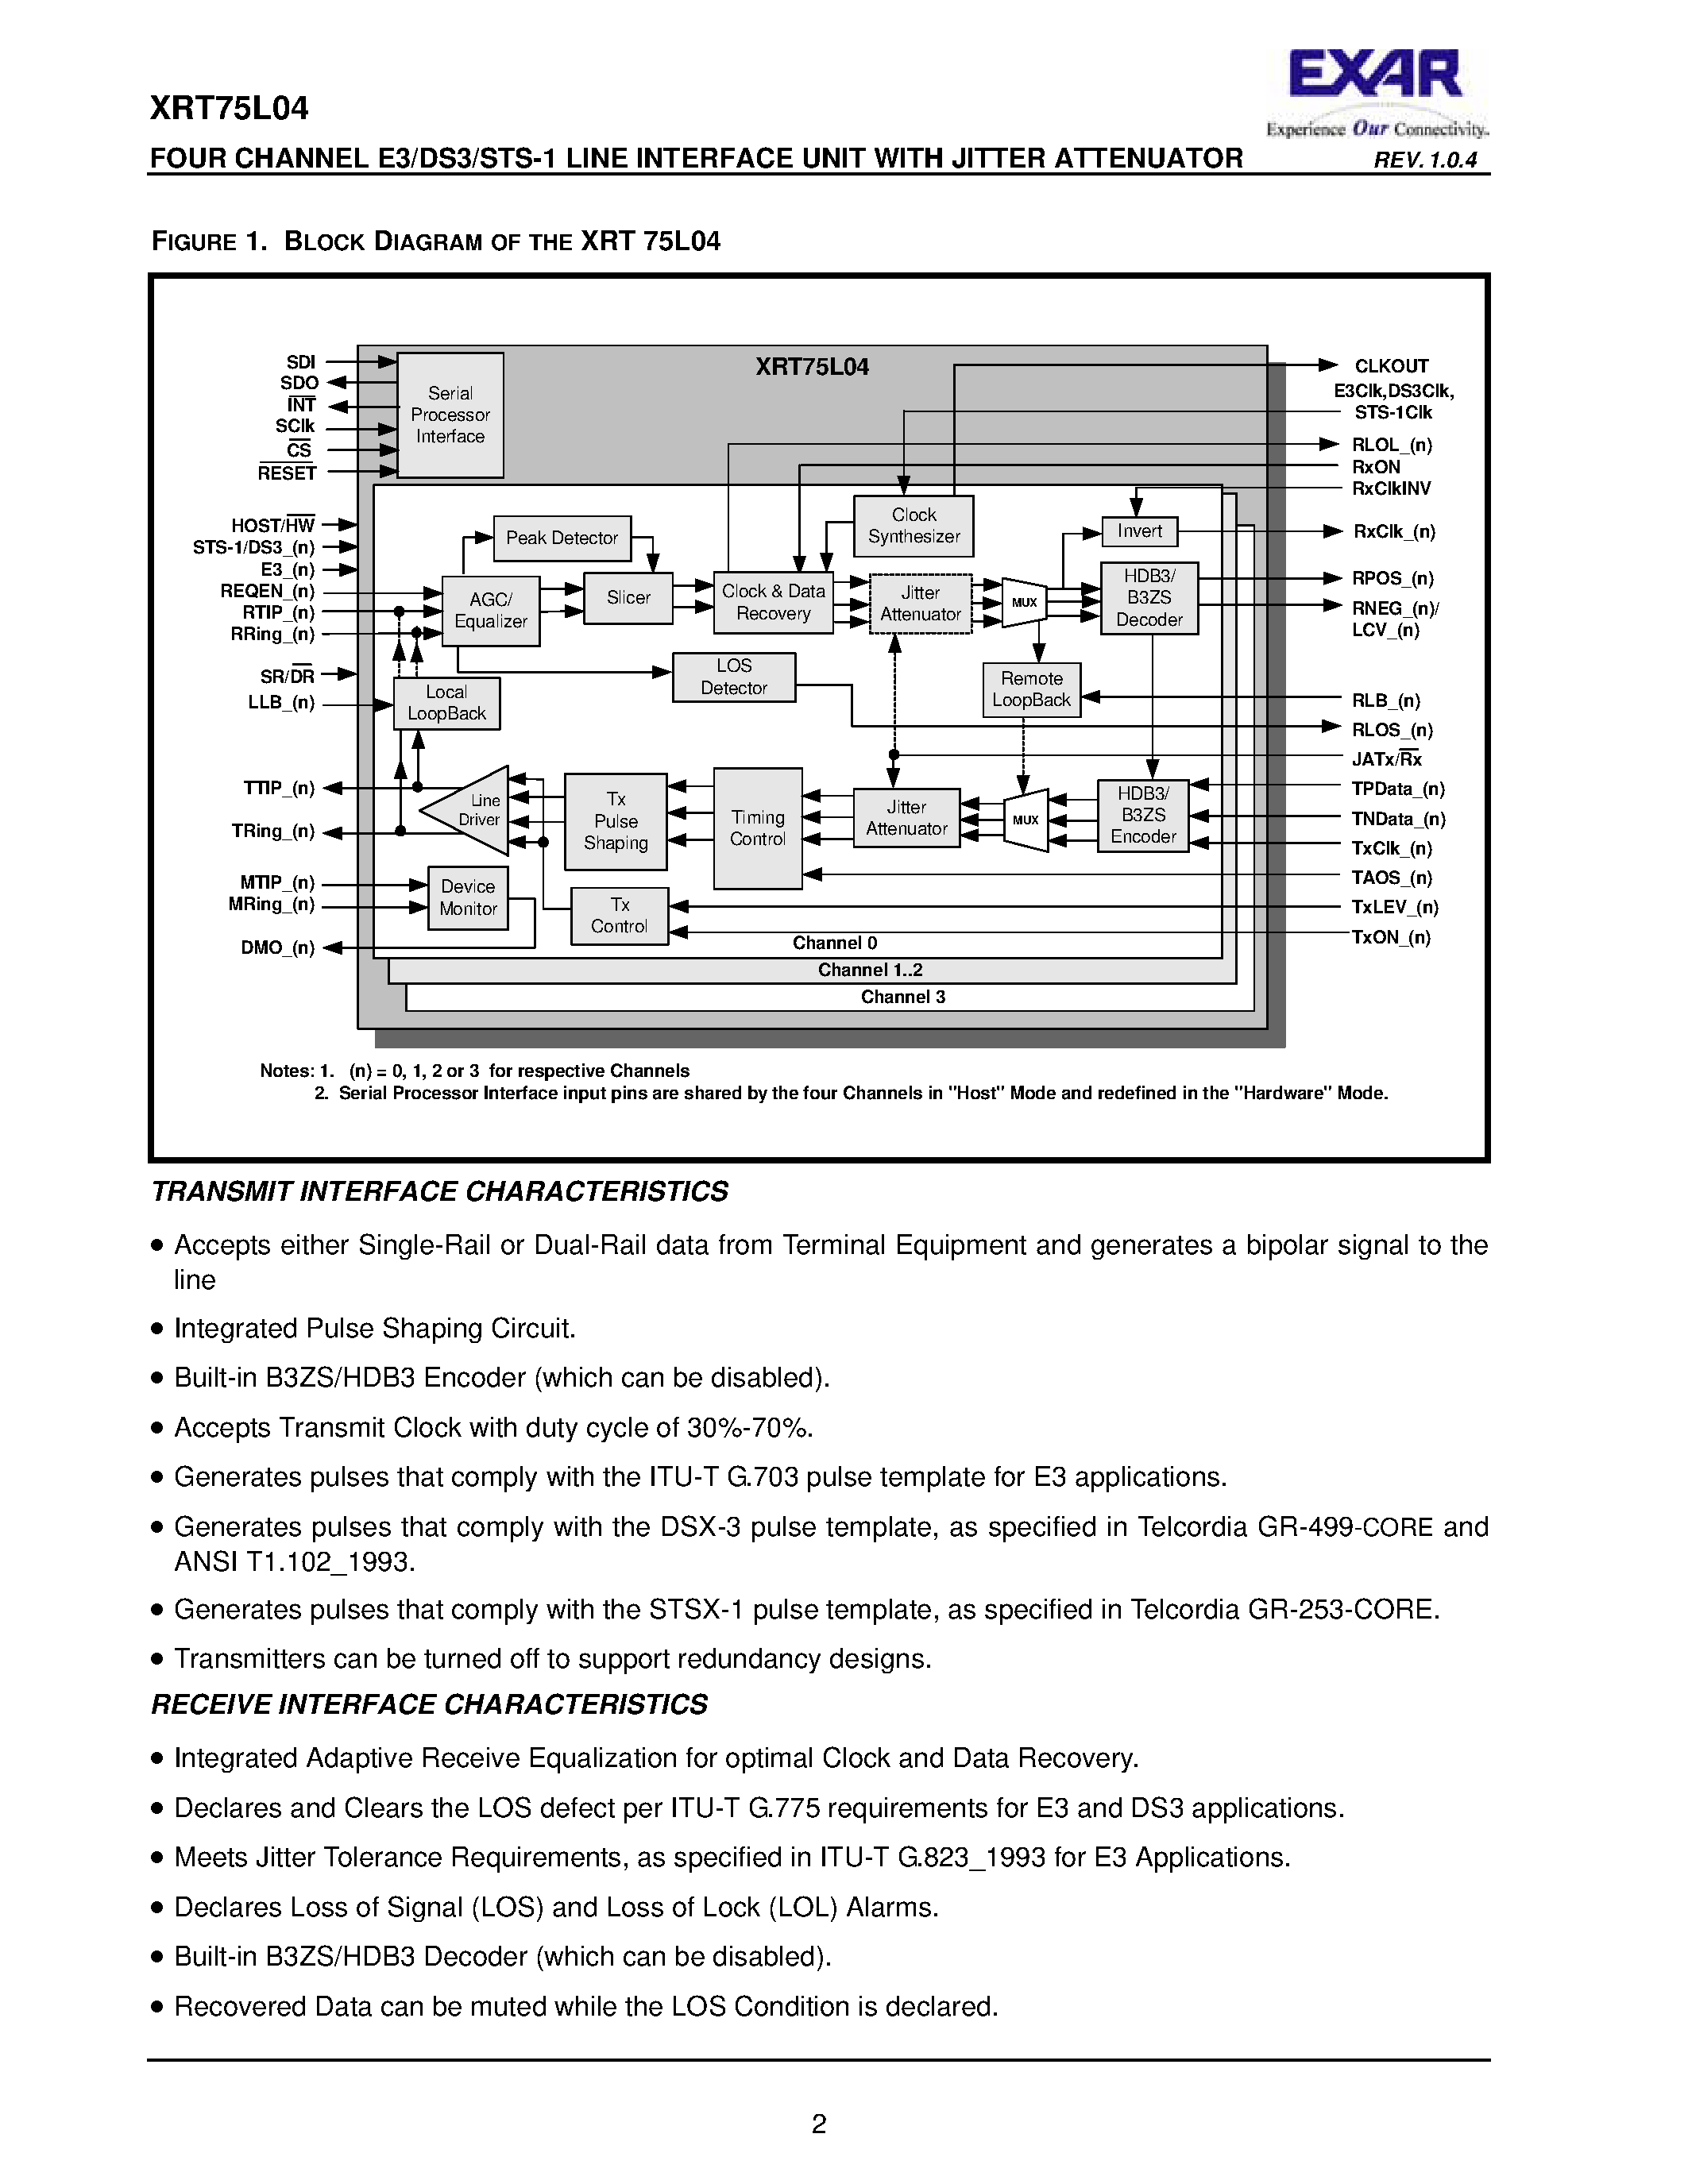 Даташит XRT75L04 - FOUR CHANNEL E3/DS3/STS-1 LINE INTERFACE UNIT страница 2